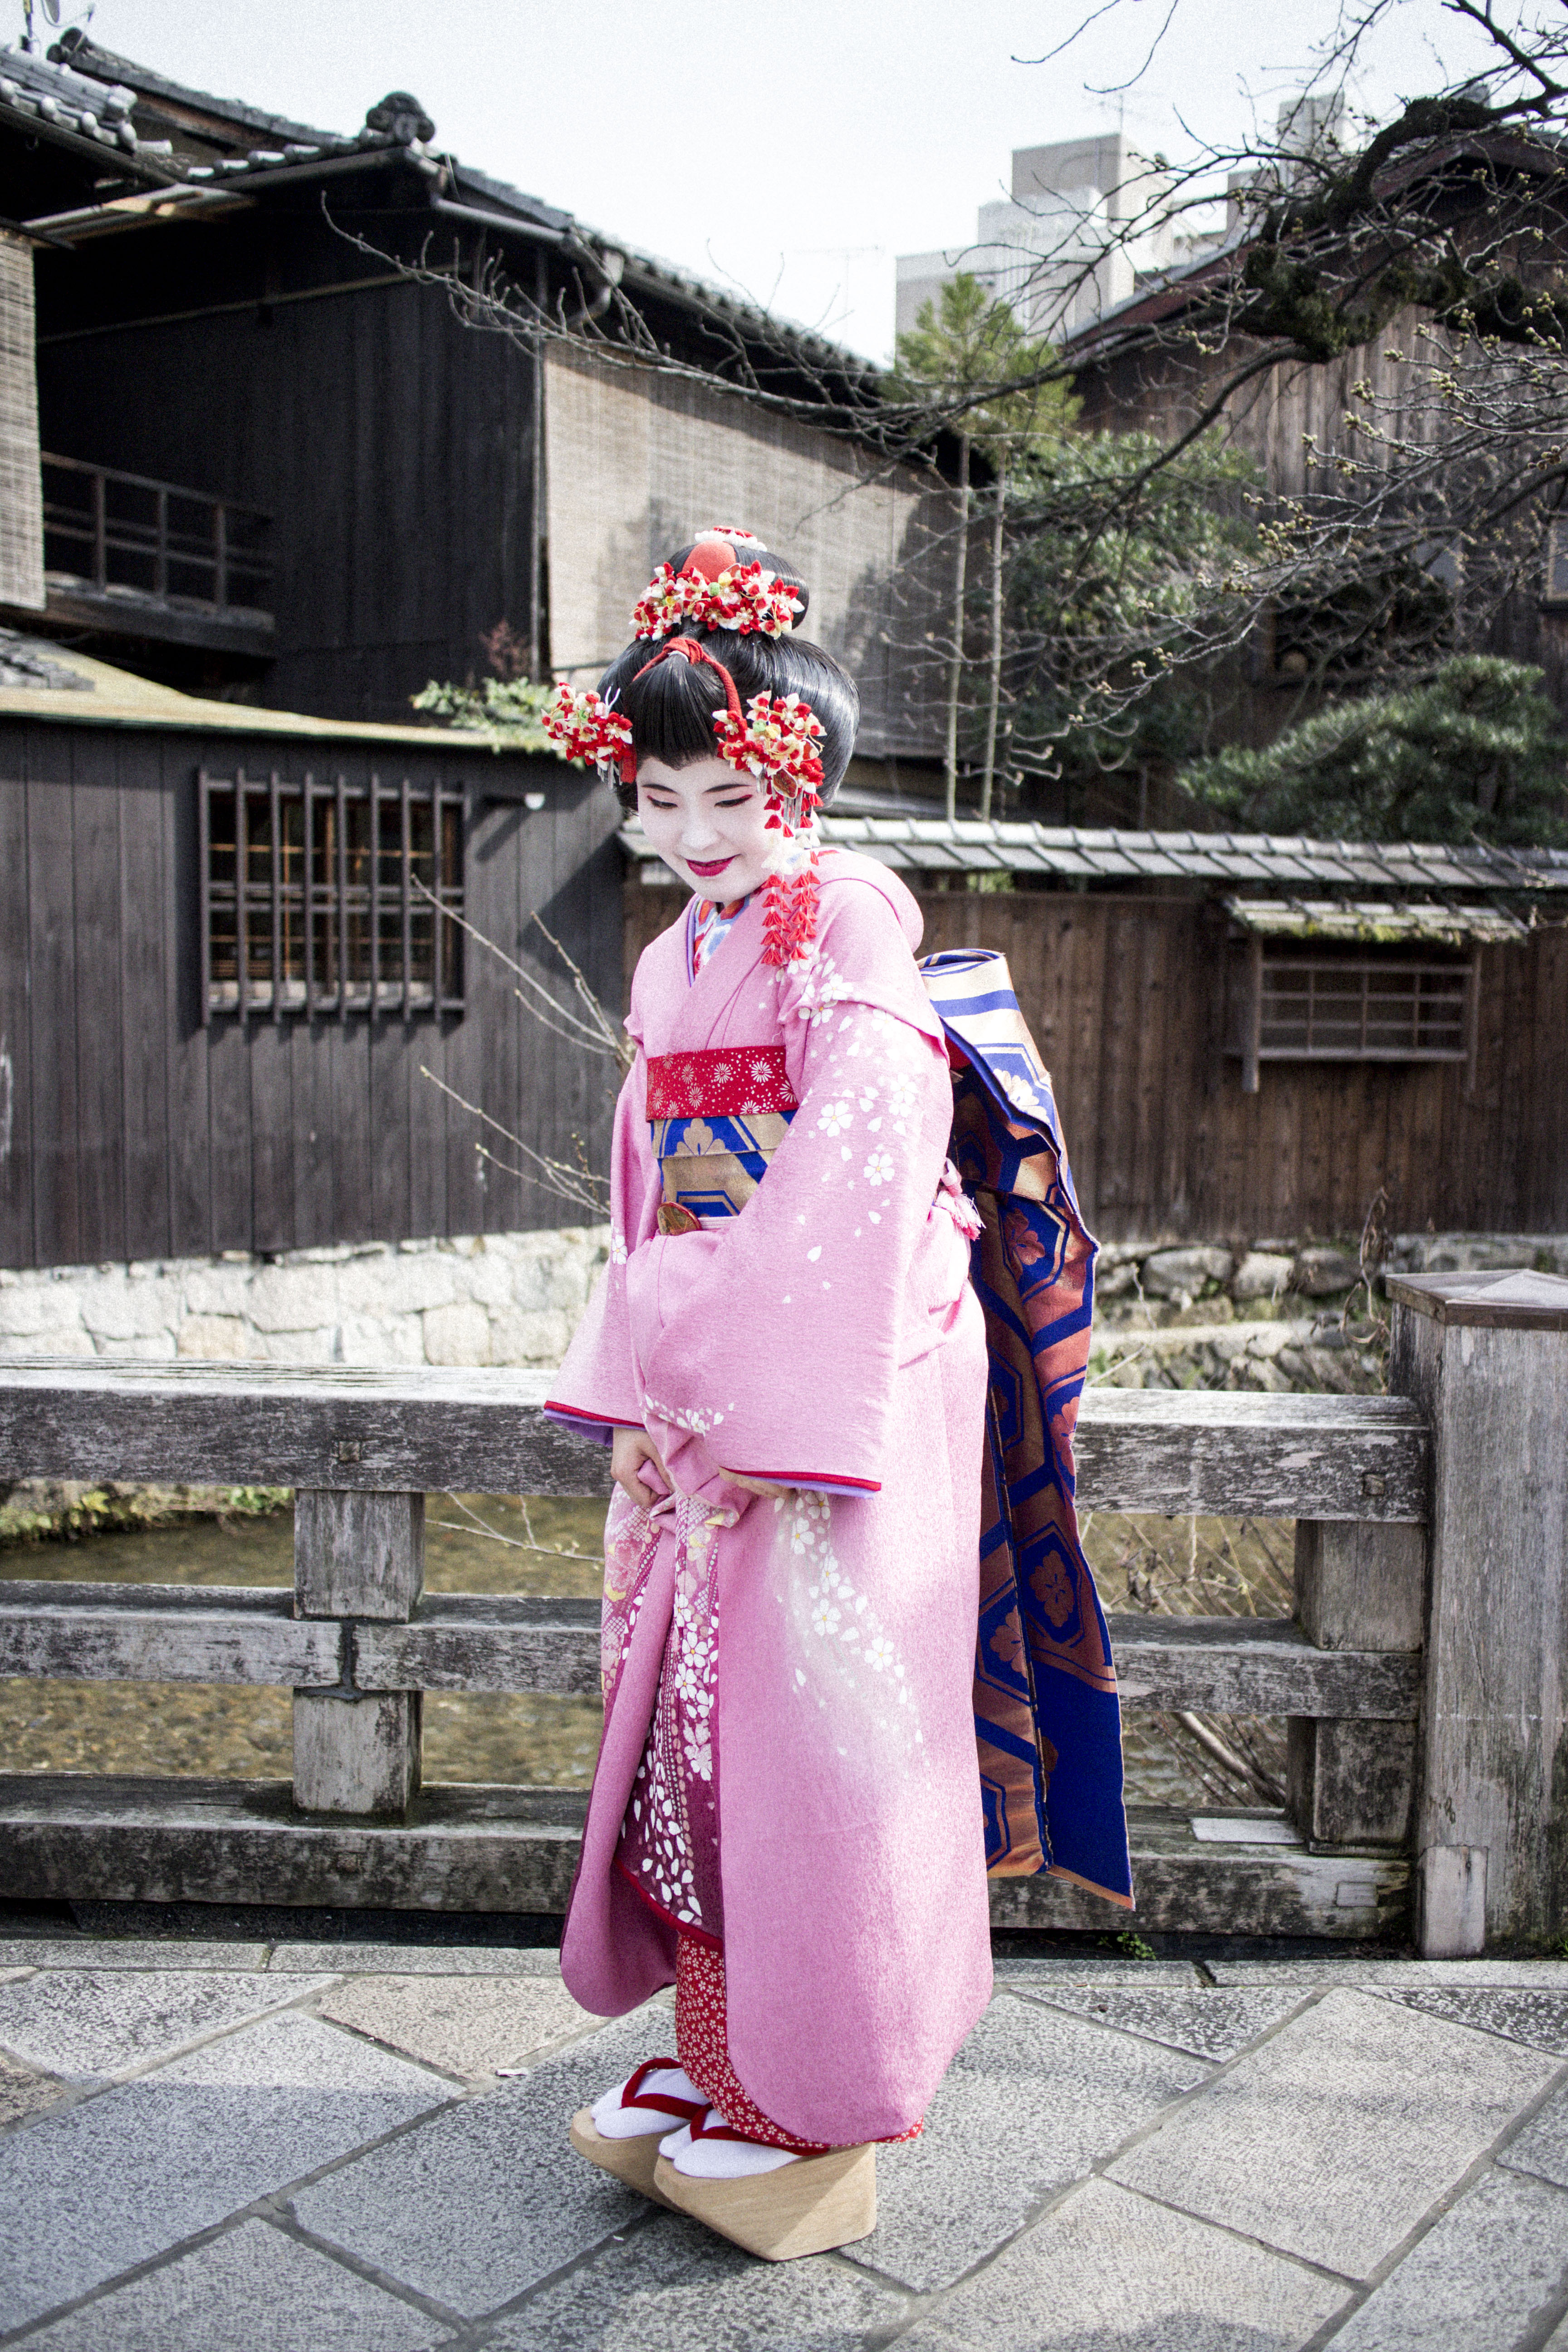 I heart Alice Kyoto / Japan Travel Diary: Gion District